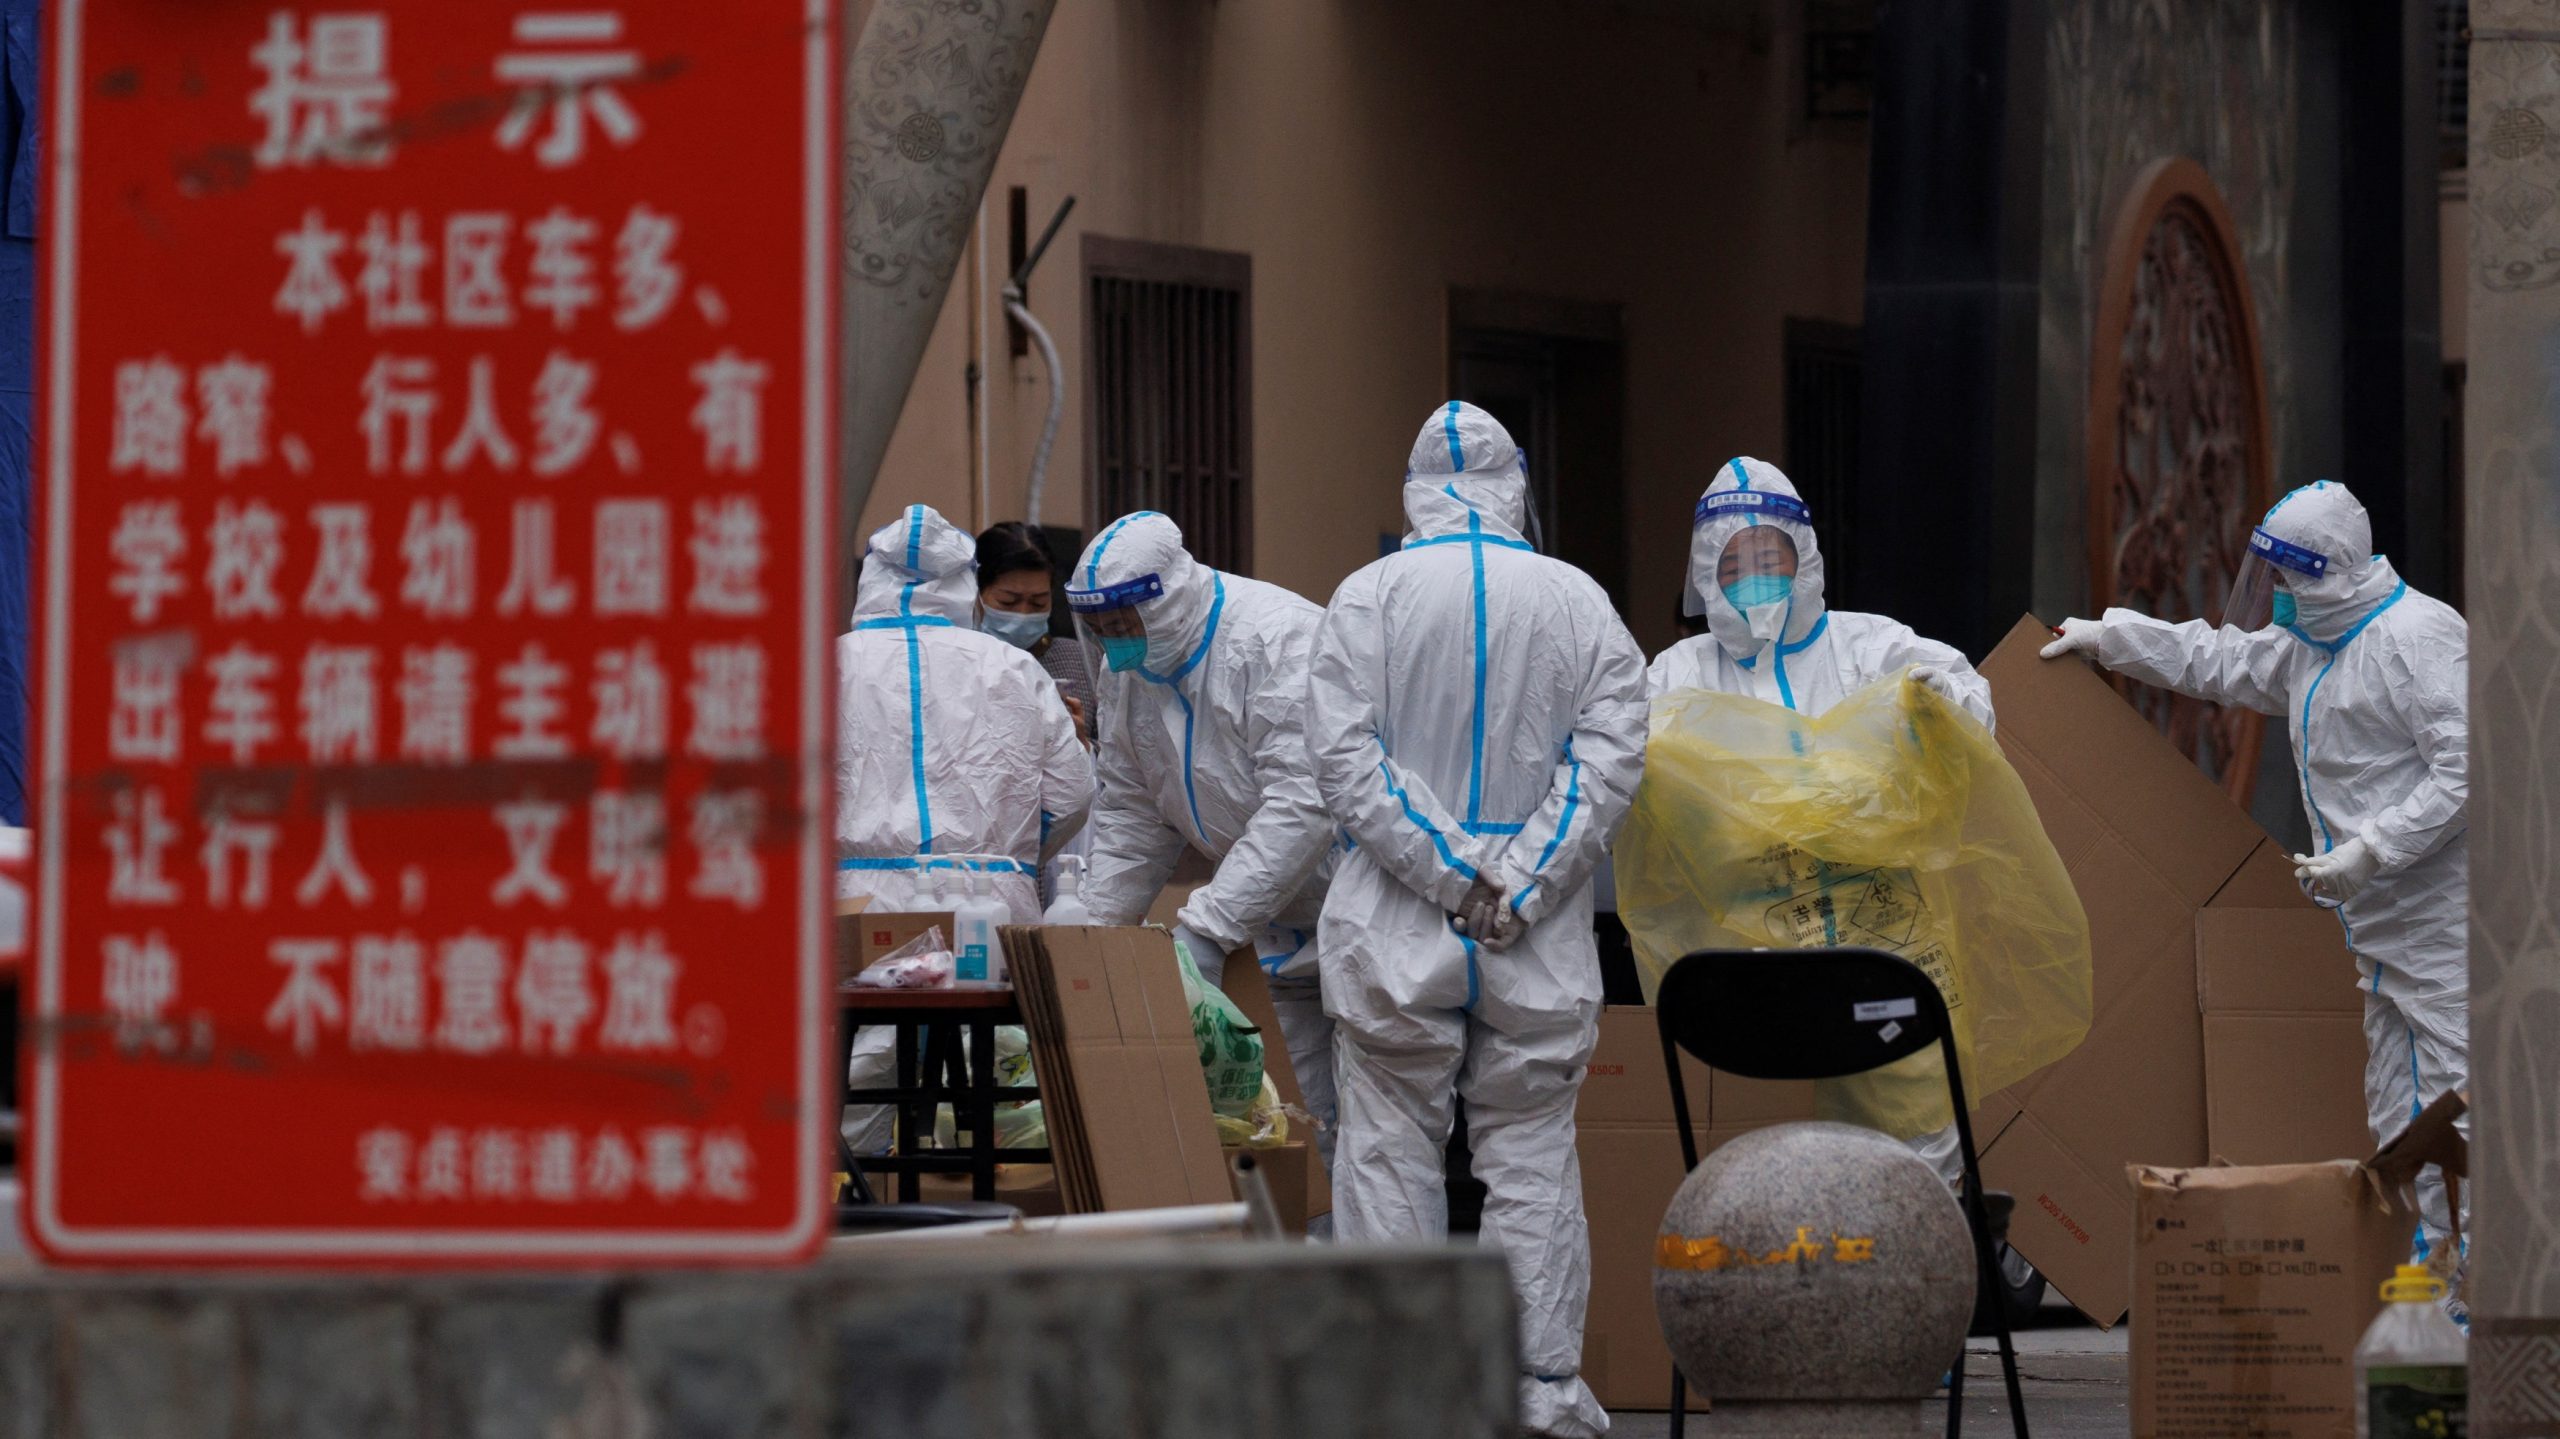 Rikthehet në origjinë, shpërthen koronavirusi në Kinë: Pse po ndodh tani?